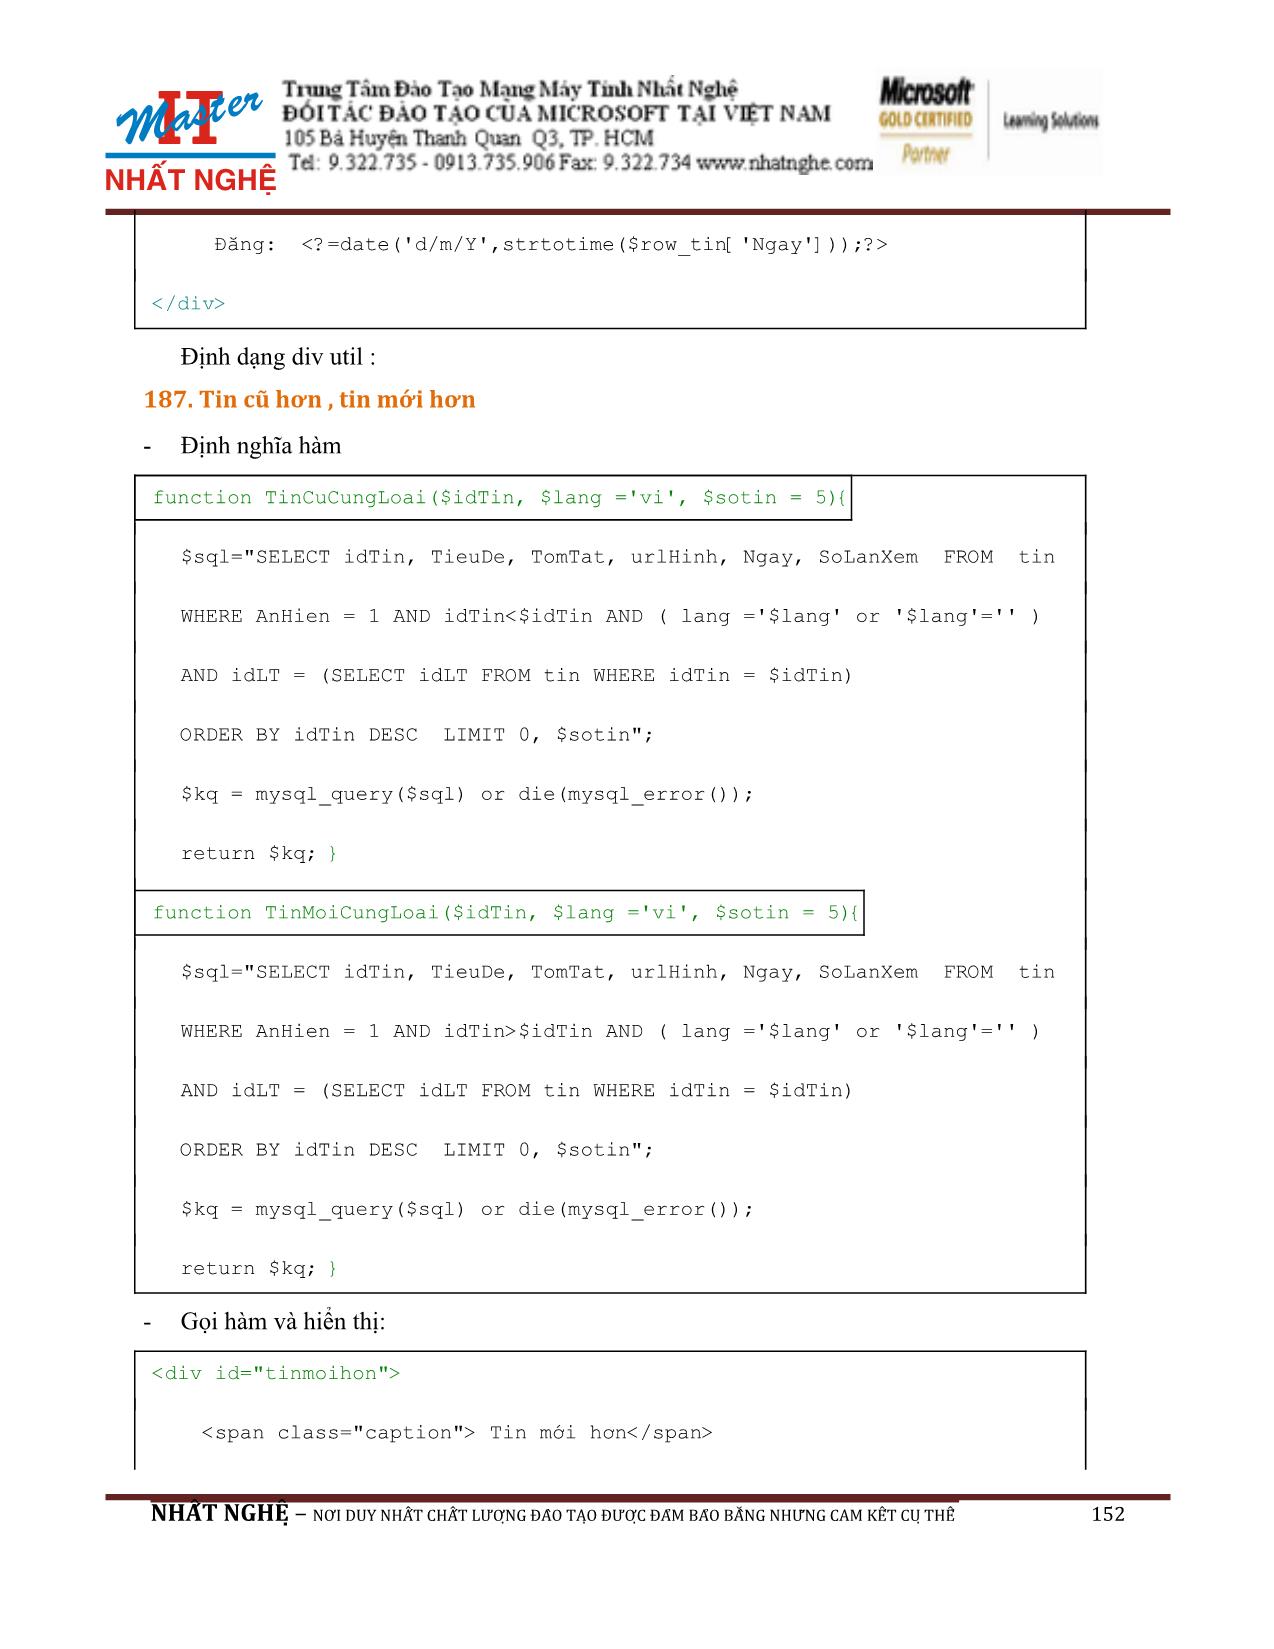 Giáo trình Hướng dẫn thiết kế Web PHP và MySQL (Phần 2) trang 4